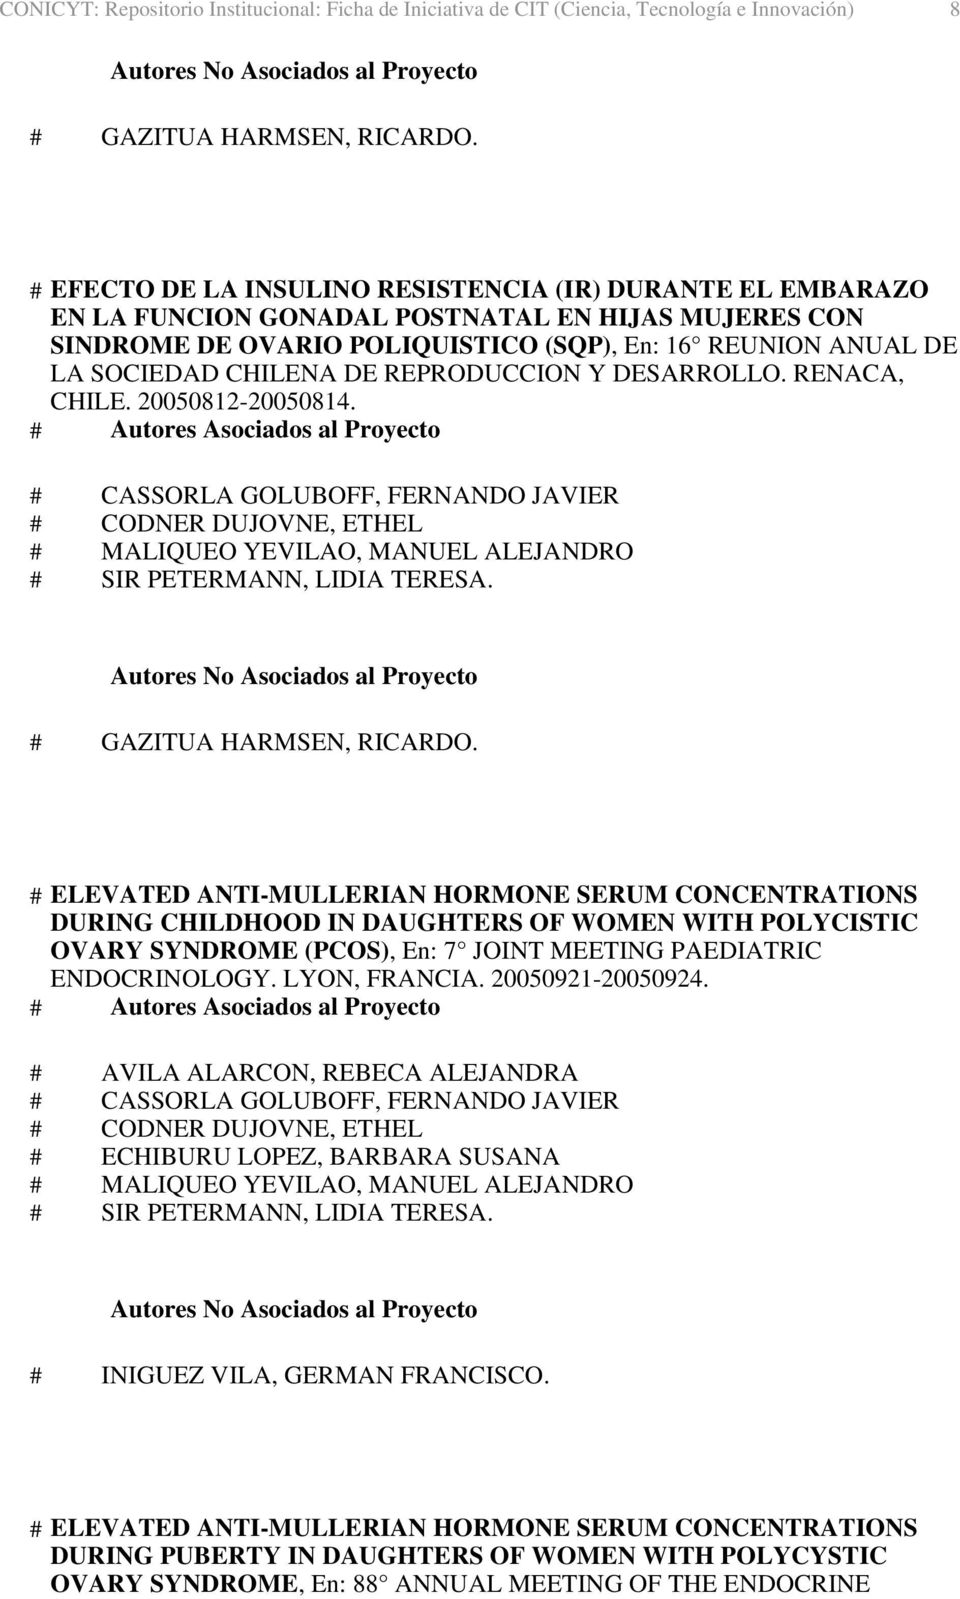 REPRODUCCION Y DESARROLLO. RENACA, CHILE. 20050812-20050814. # GAZITUA HARMSEN, RICARDO.